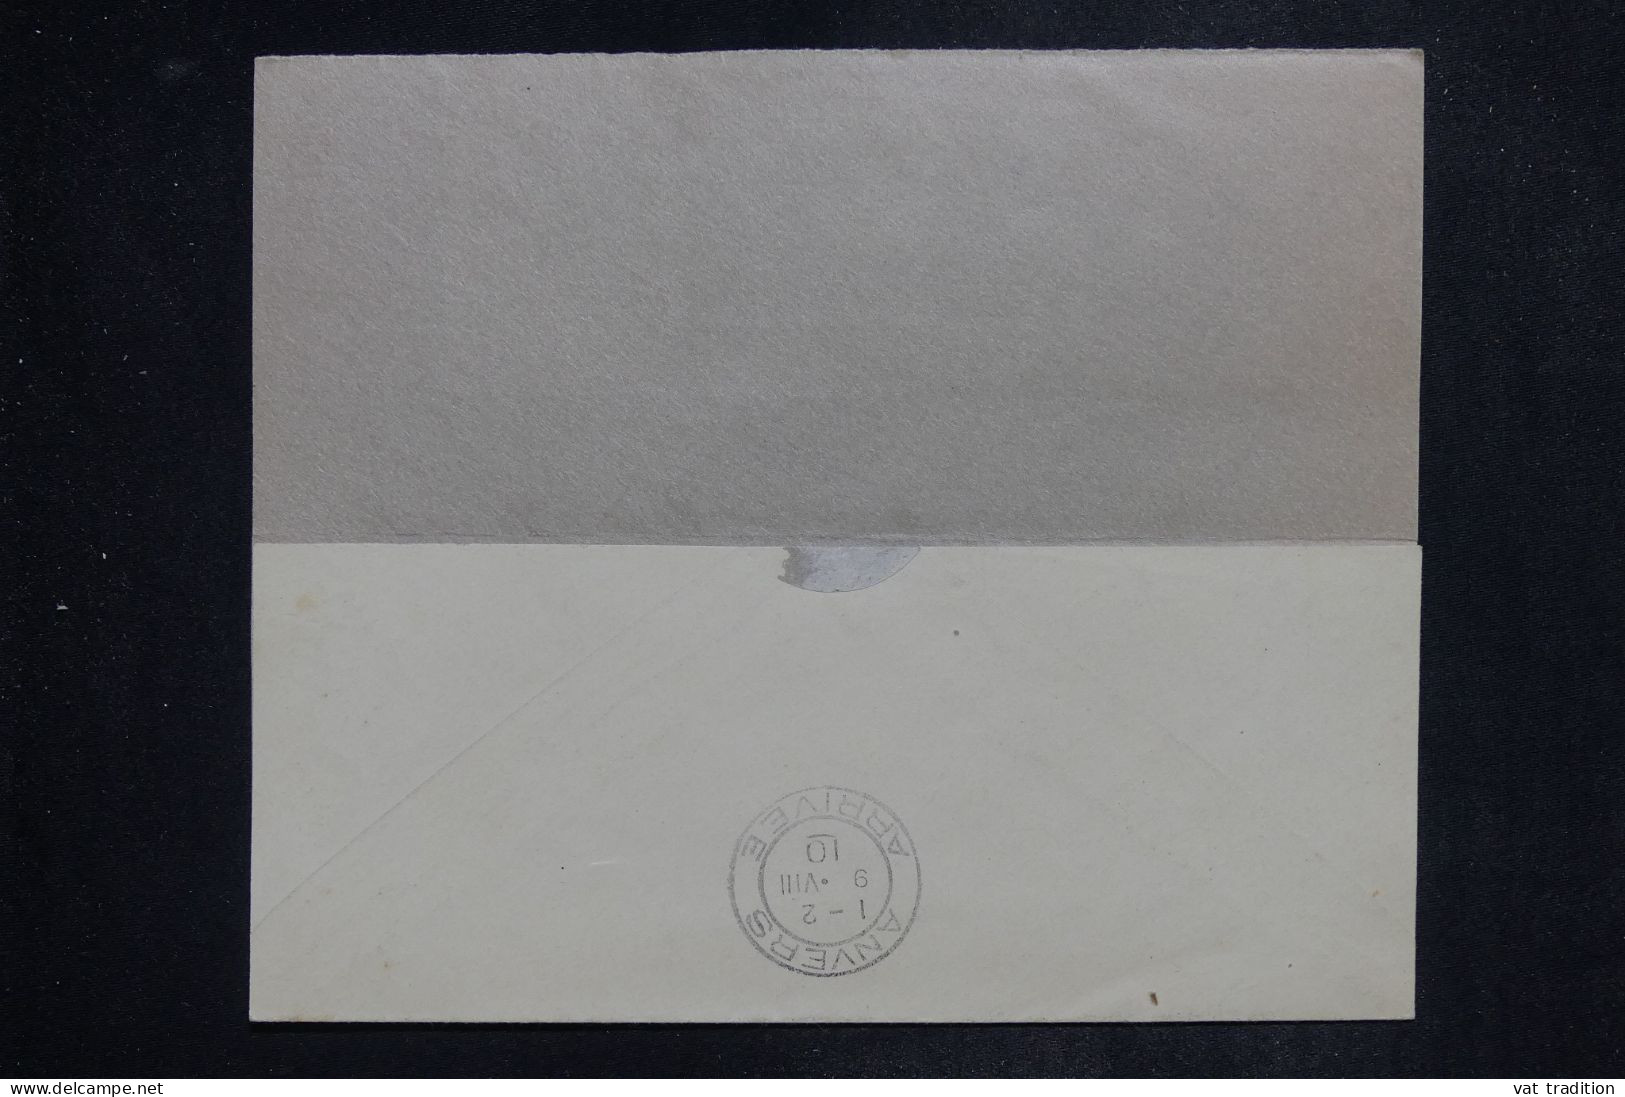 BELGIQUE - Entier Postal + Compléments De Bruxelles Pour Anvers En 1910 - L 151021 - Sobres